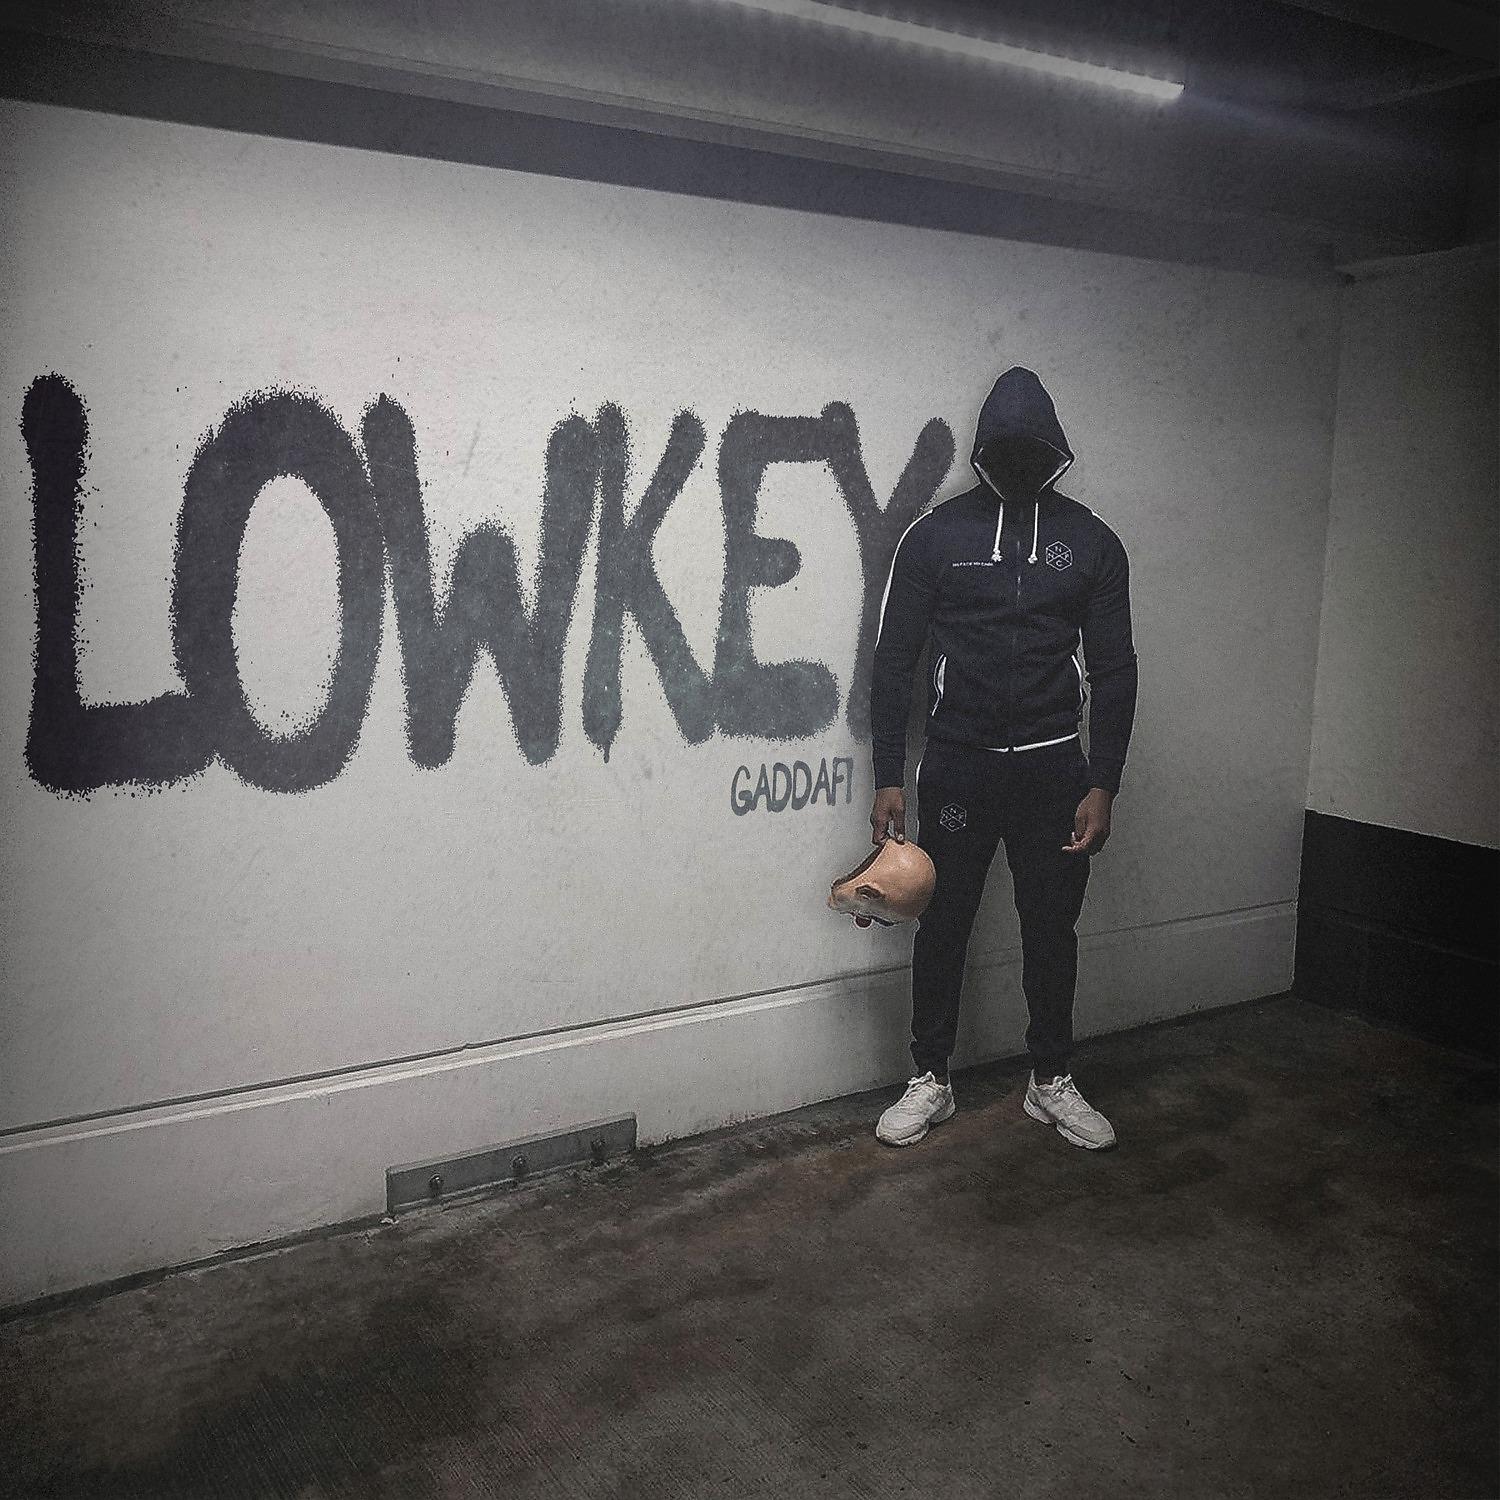 Постер альбома Lowkey